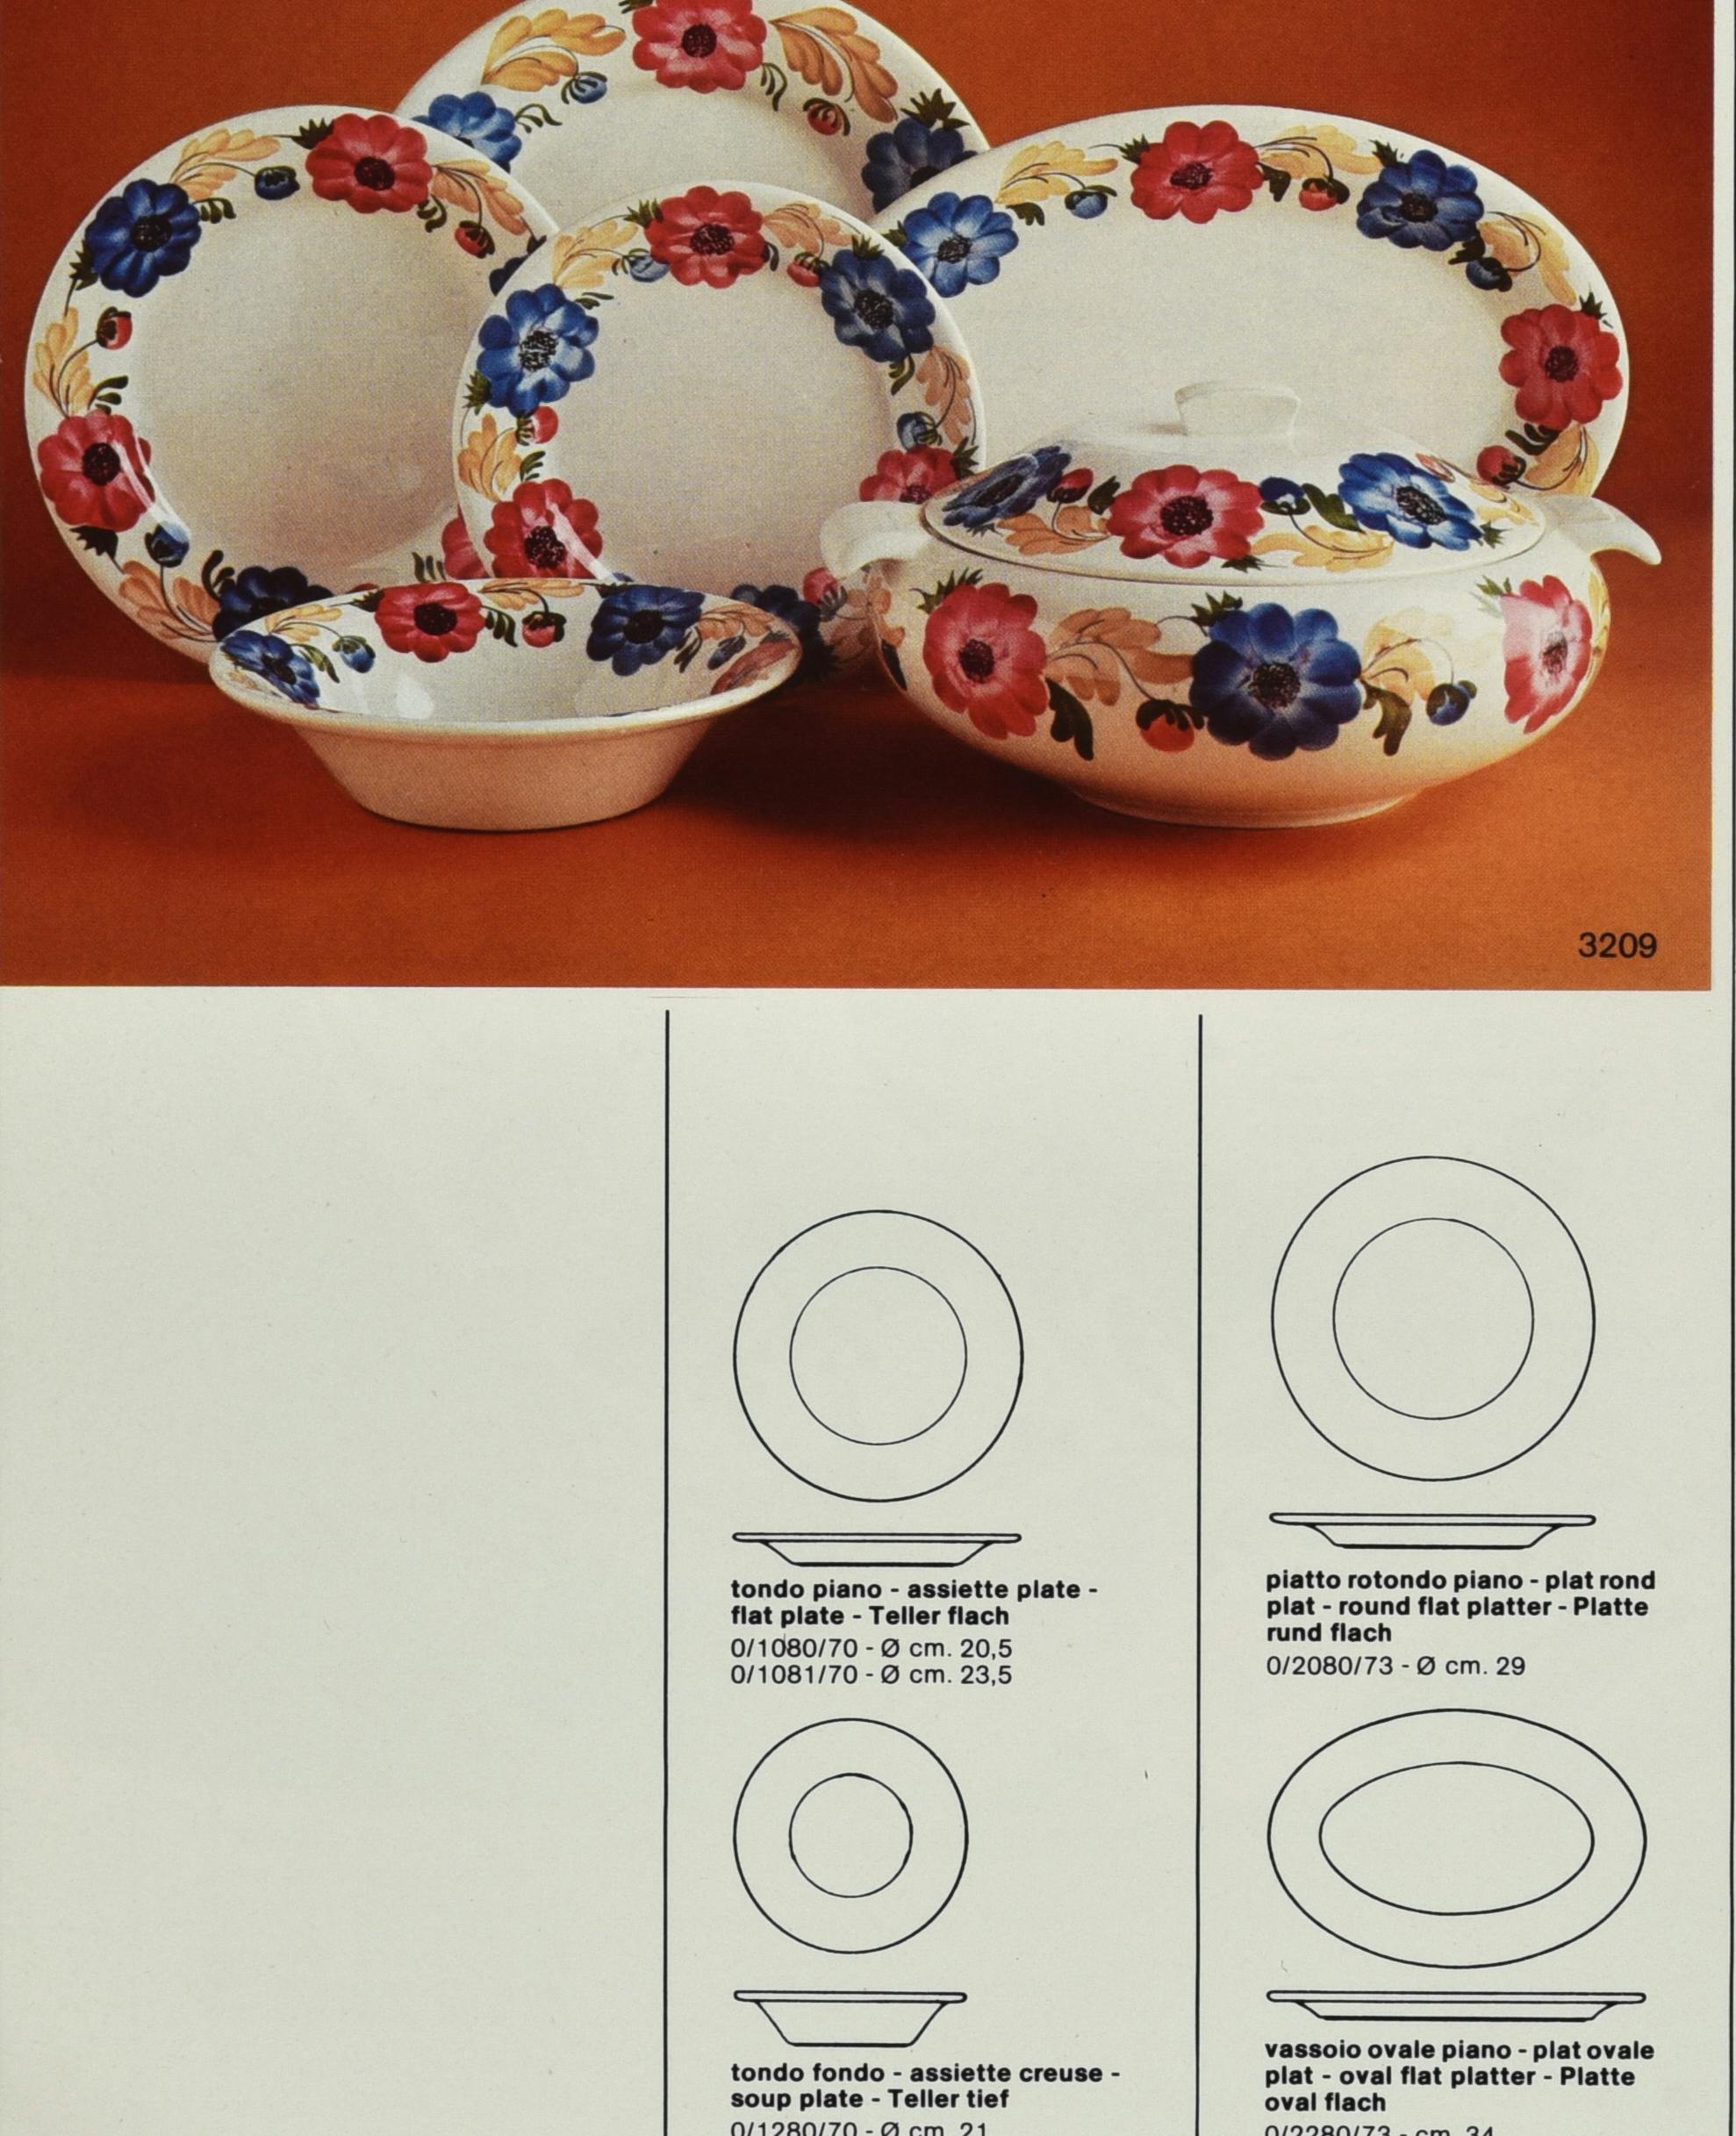 Pagine di catalogo con foto a colori di un servizio di piatti con decoro floreale e sagome stilizzate dei singoli elementi che lo compongono